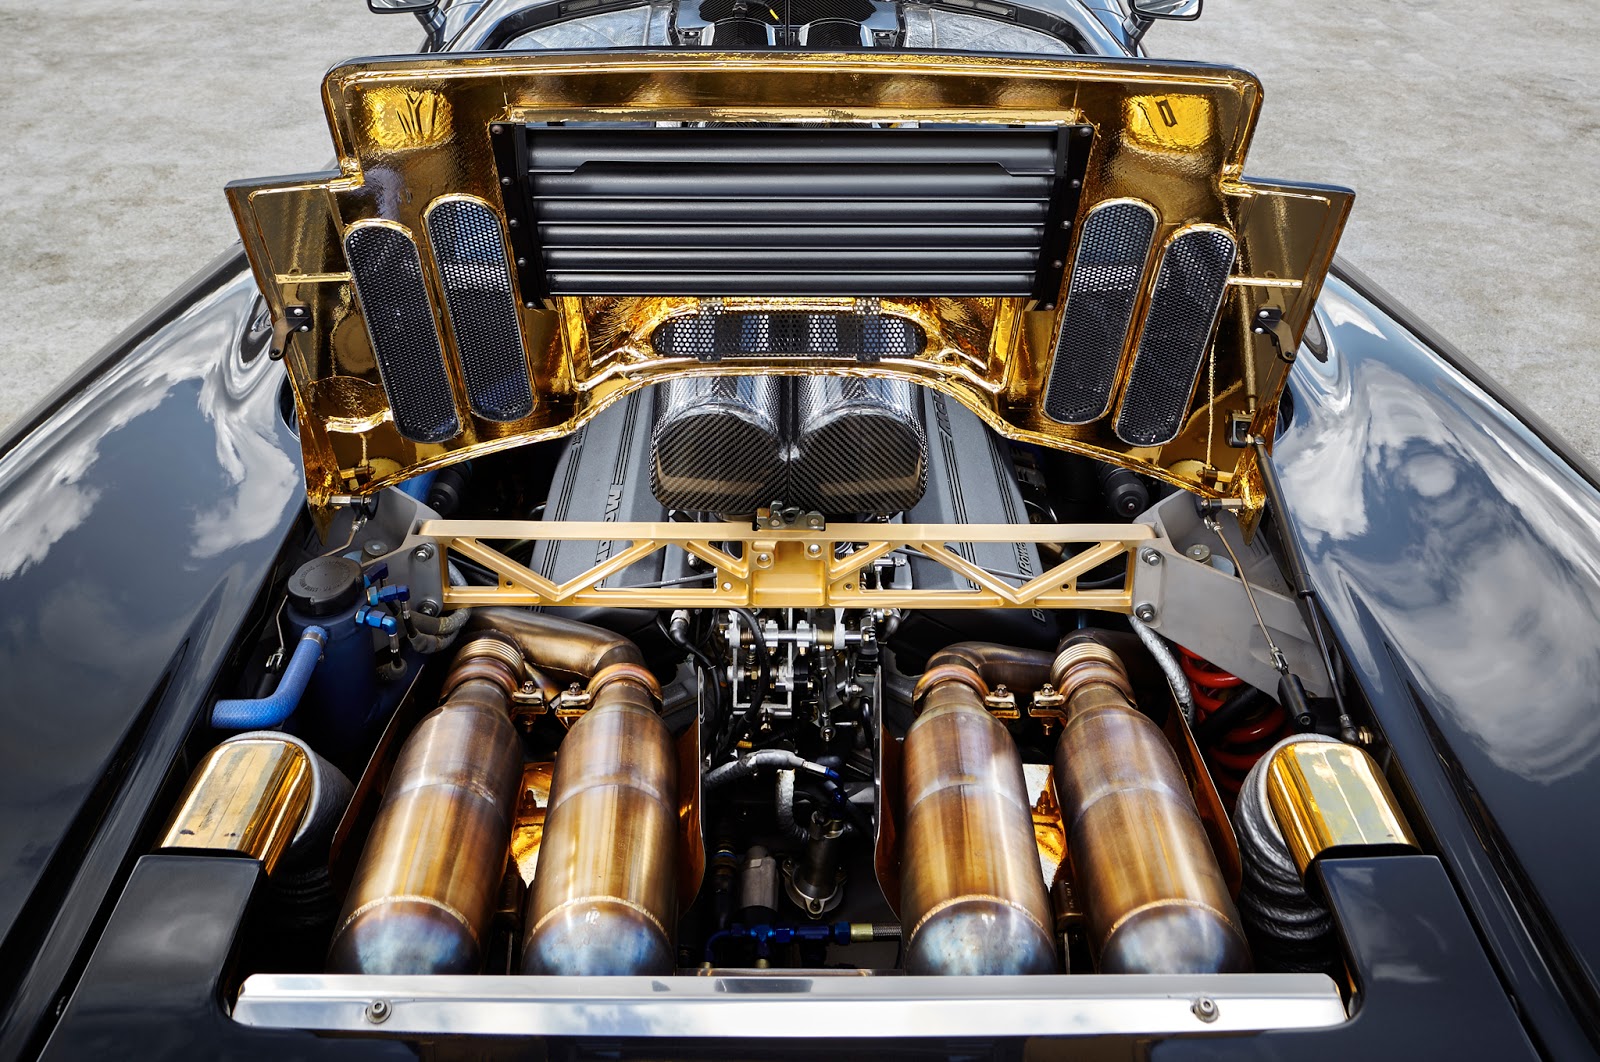 Detalhe do revestimento em ouro do cofre do motor